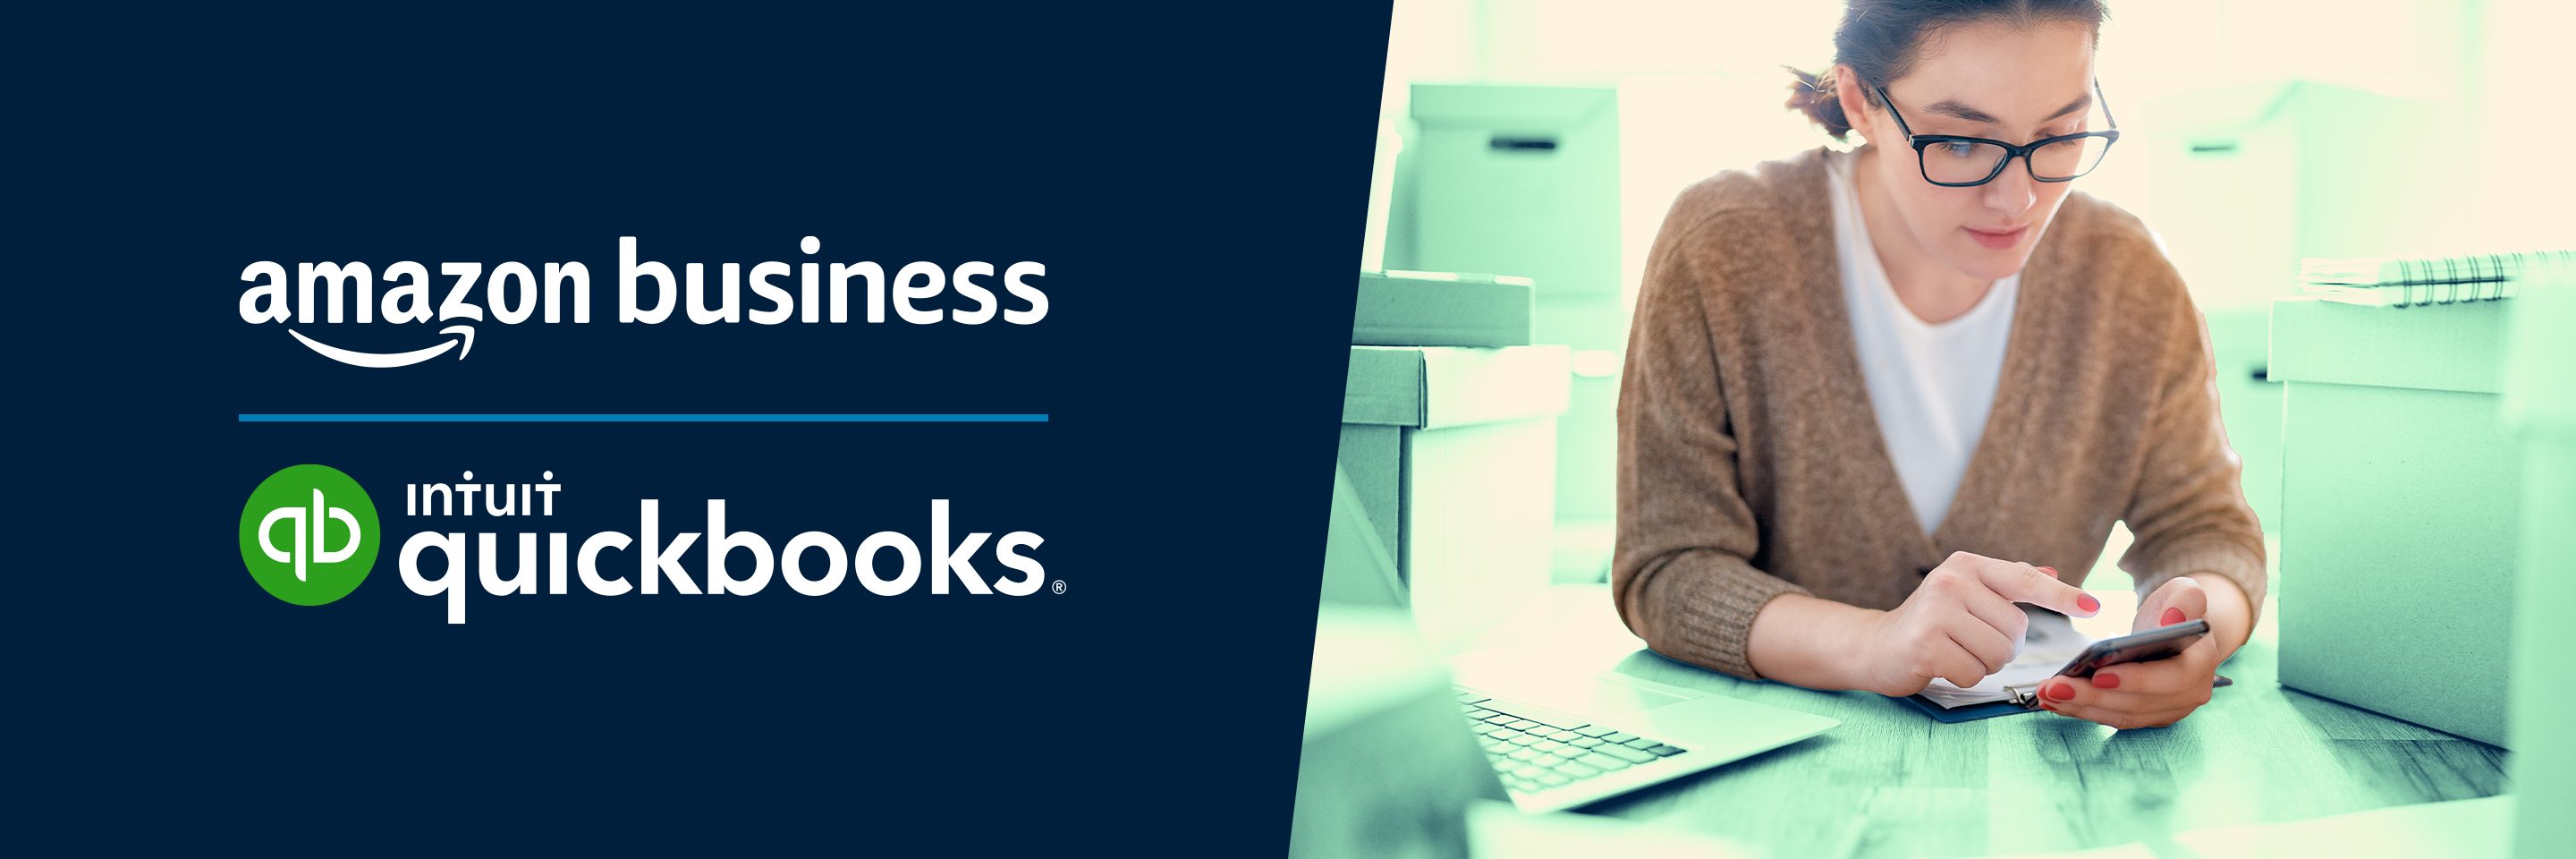 Amazon Business y QuickBooks: Mes de la educación financiera 